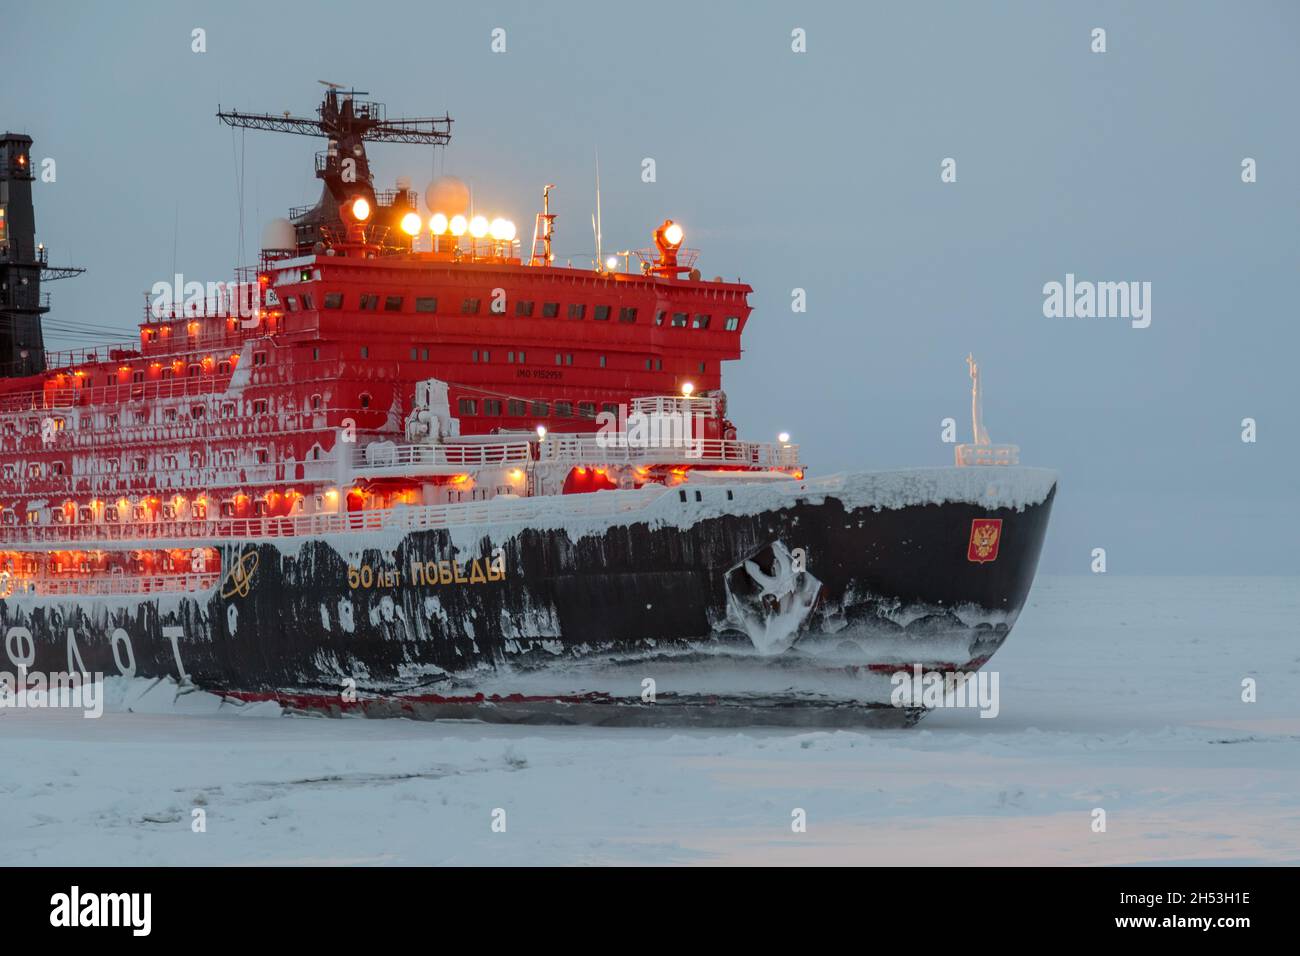 Tiksi, Rusia - 15 de julio de 2017: El rompehielo se pone sobre hielo. Foto de stock